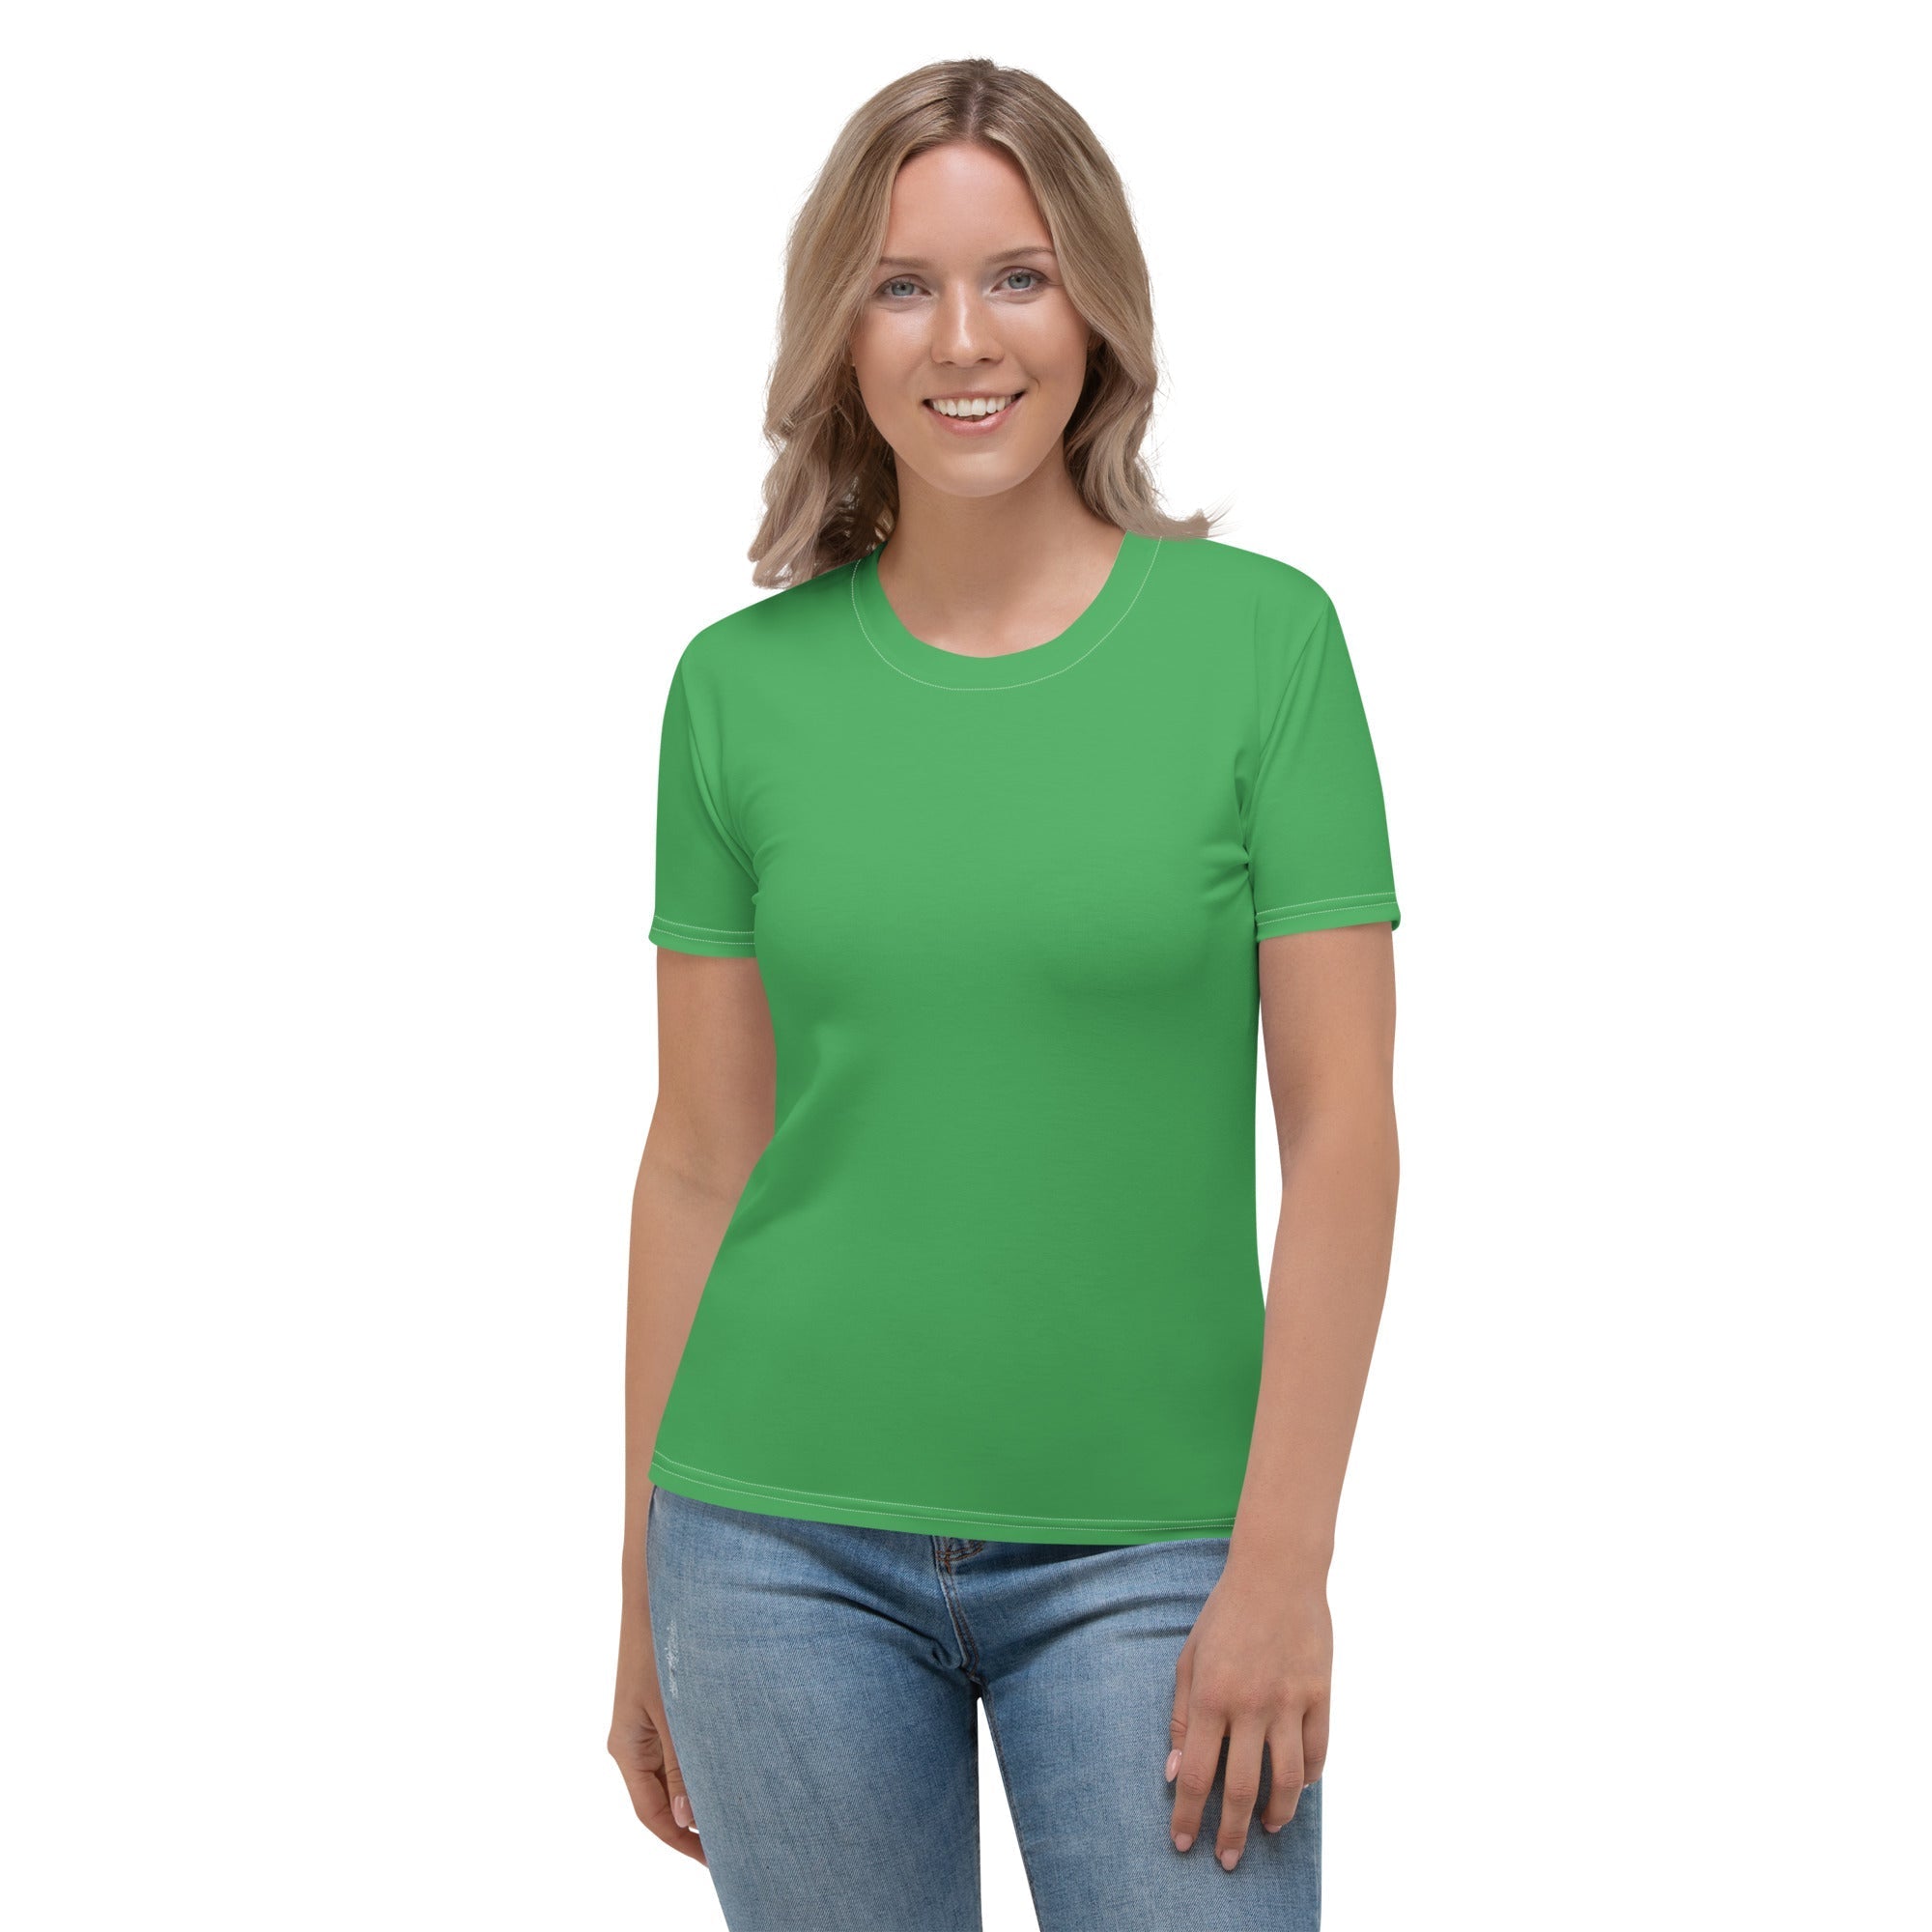 Clover Green T-shirt